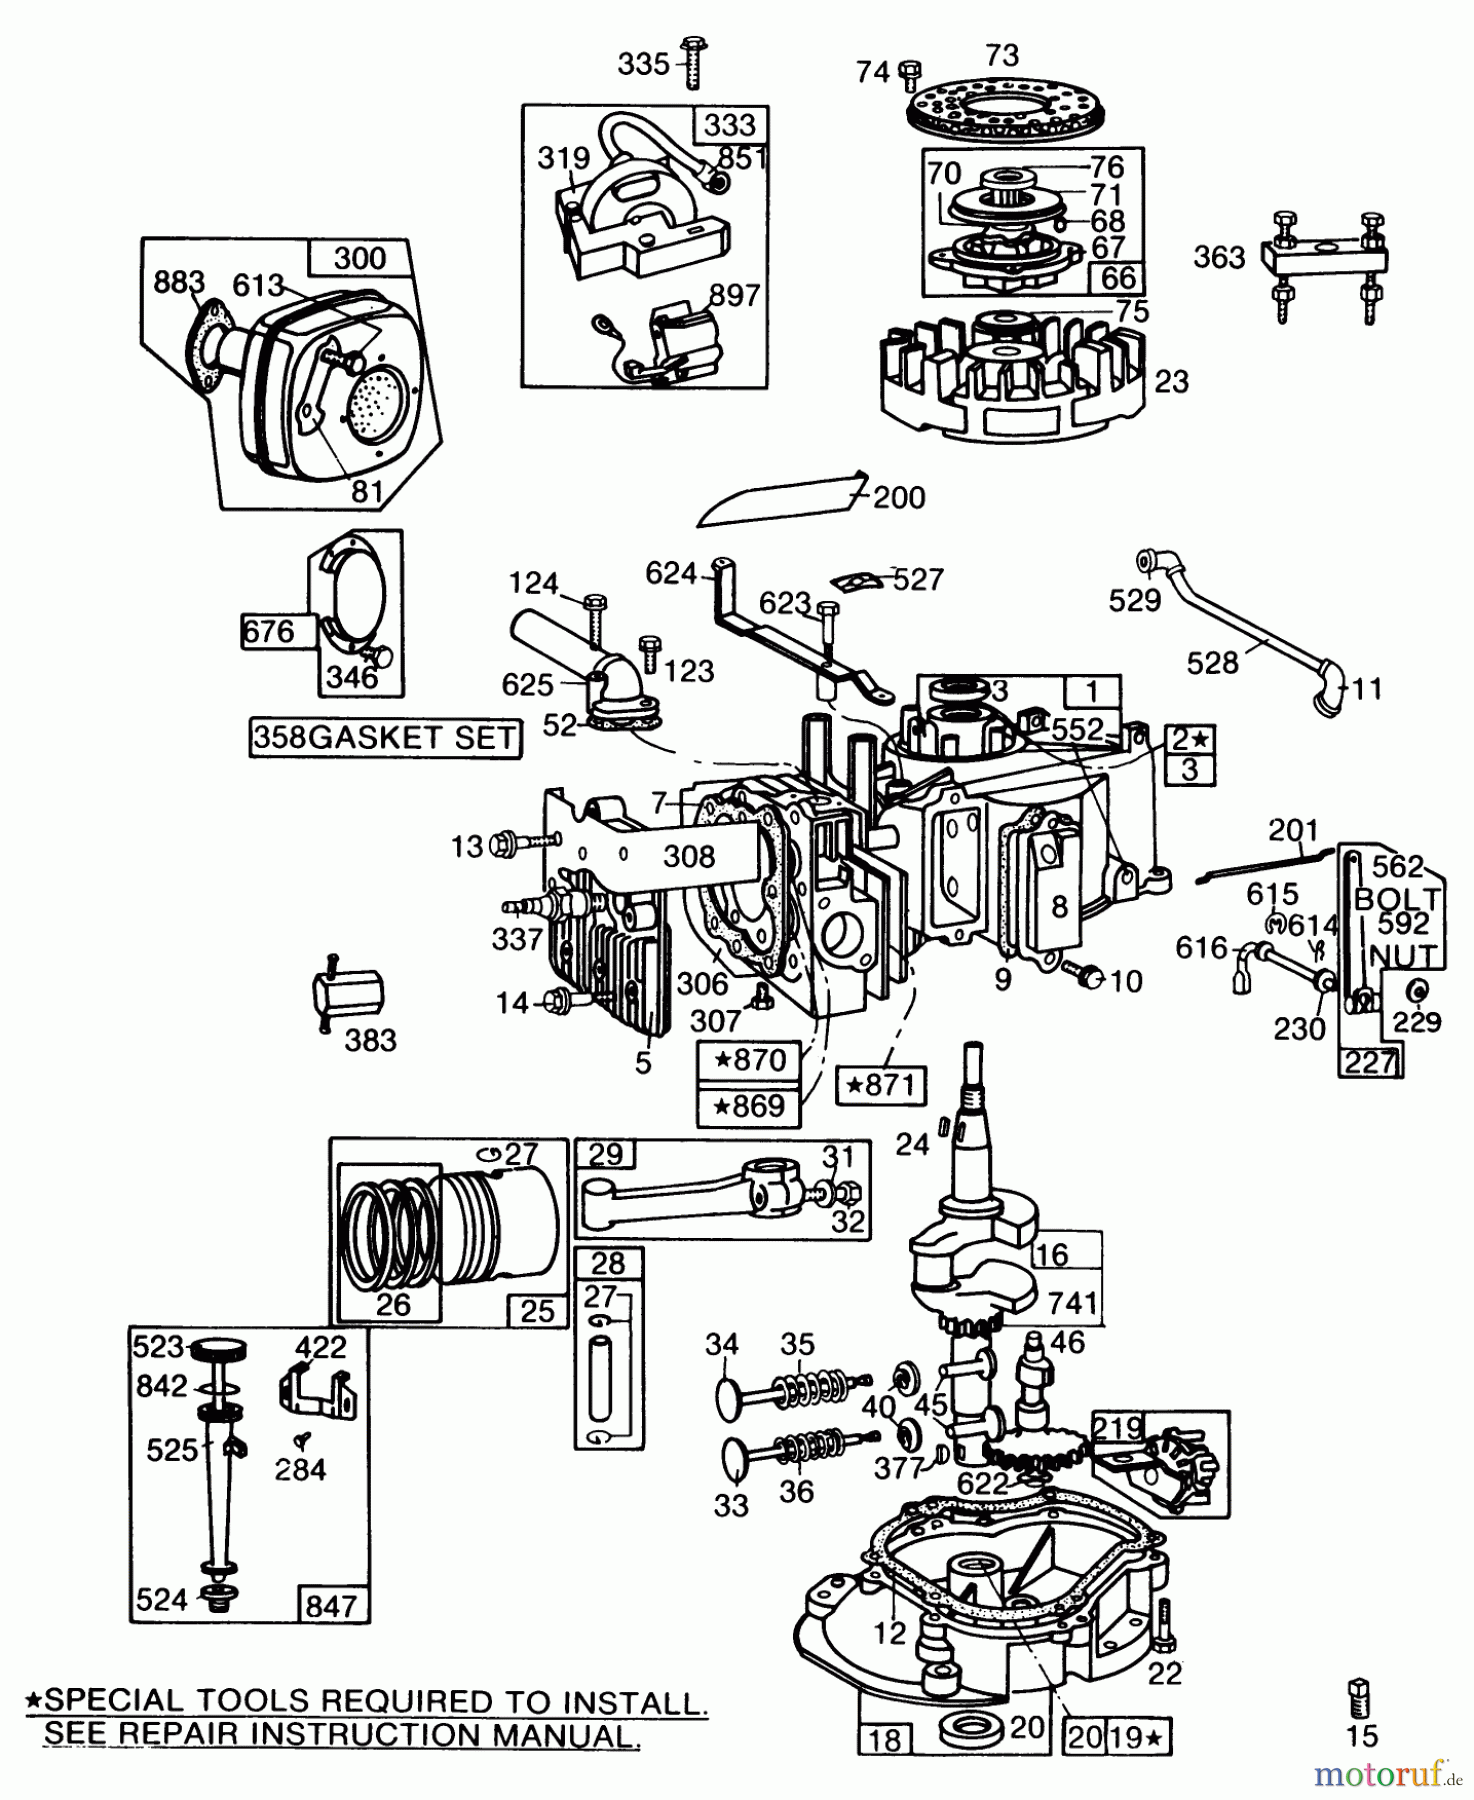  Toro Neu Mowers, Walk-Behind Seite 2 22005 - Toro Lawnmower, 1985 (5000001-5999999) ENGINE BRIGGS & STRATTON MODEL NO. 130902 TYPE 1200-01 #1